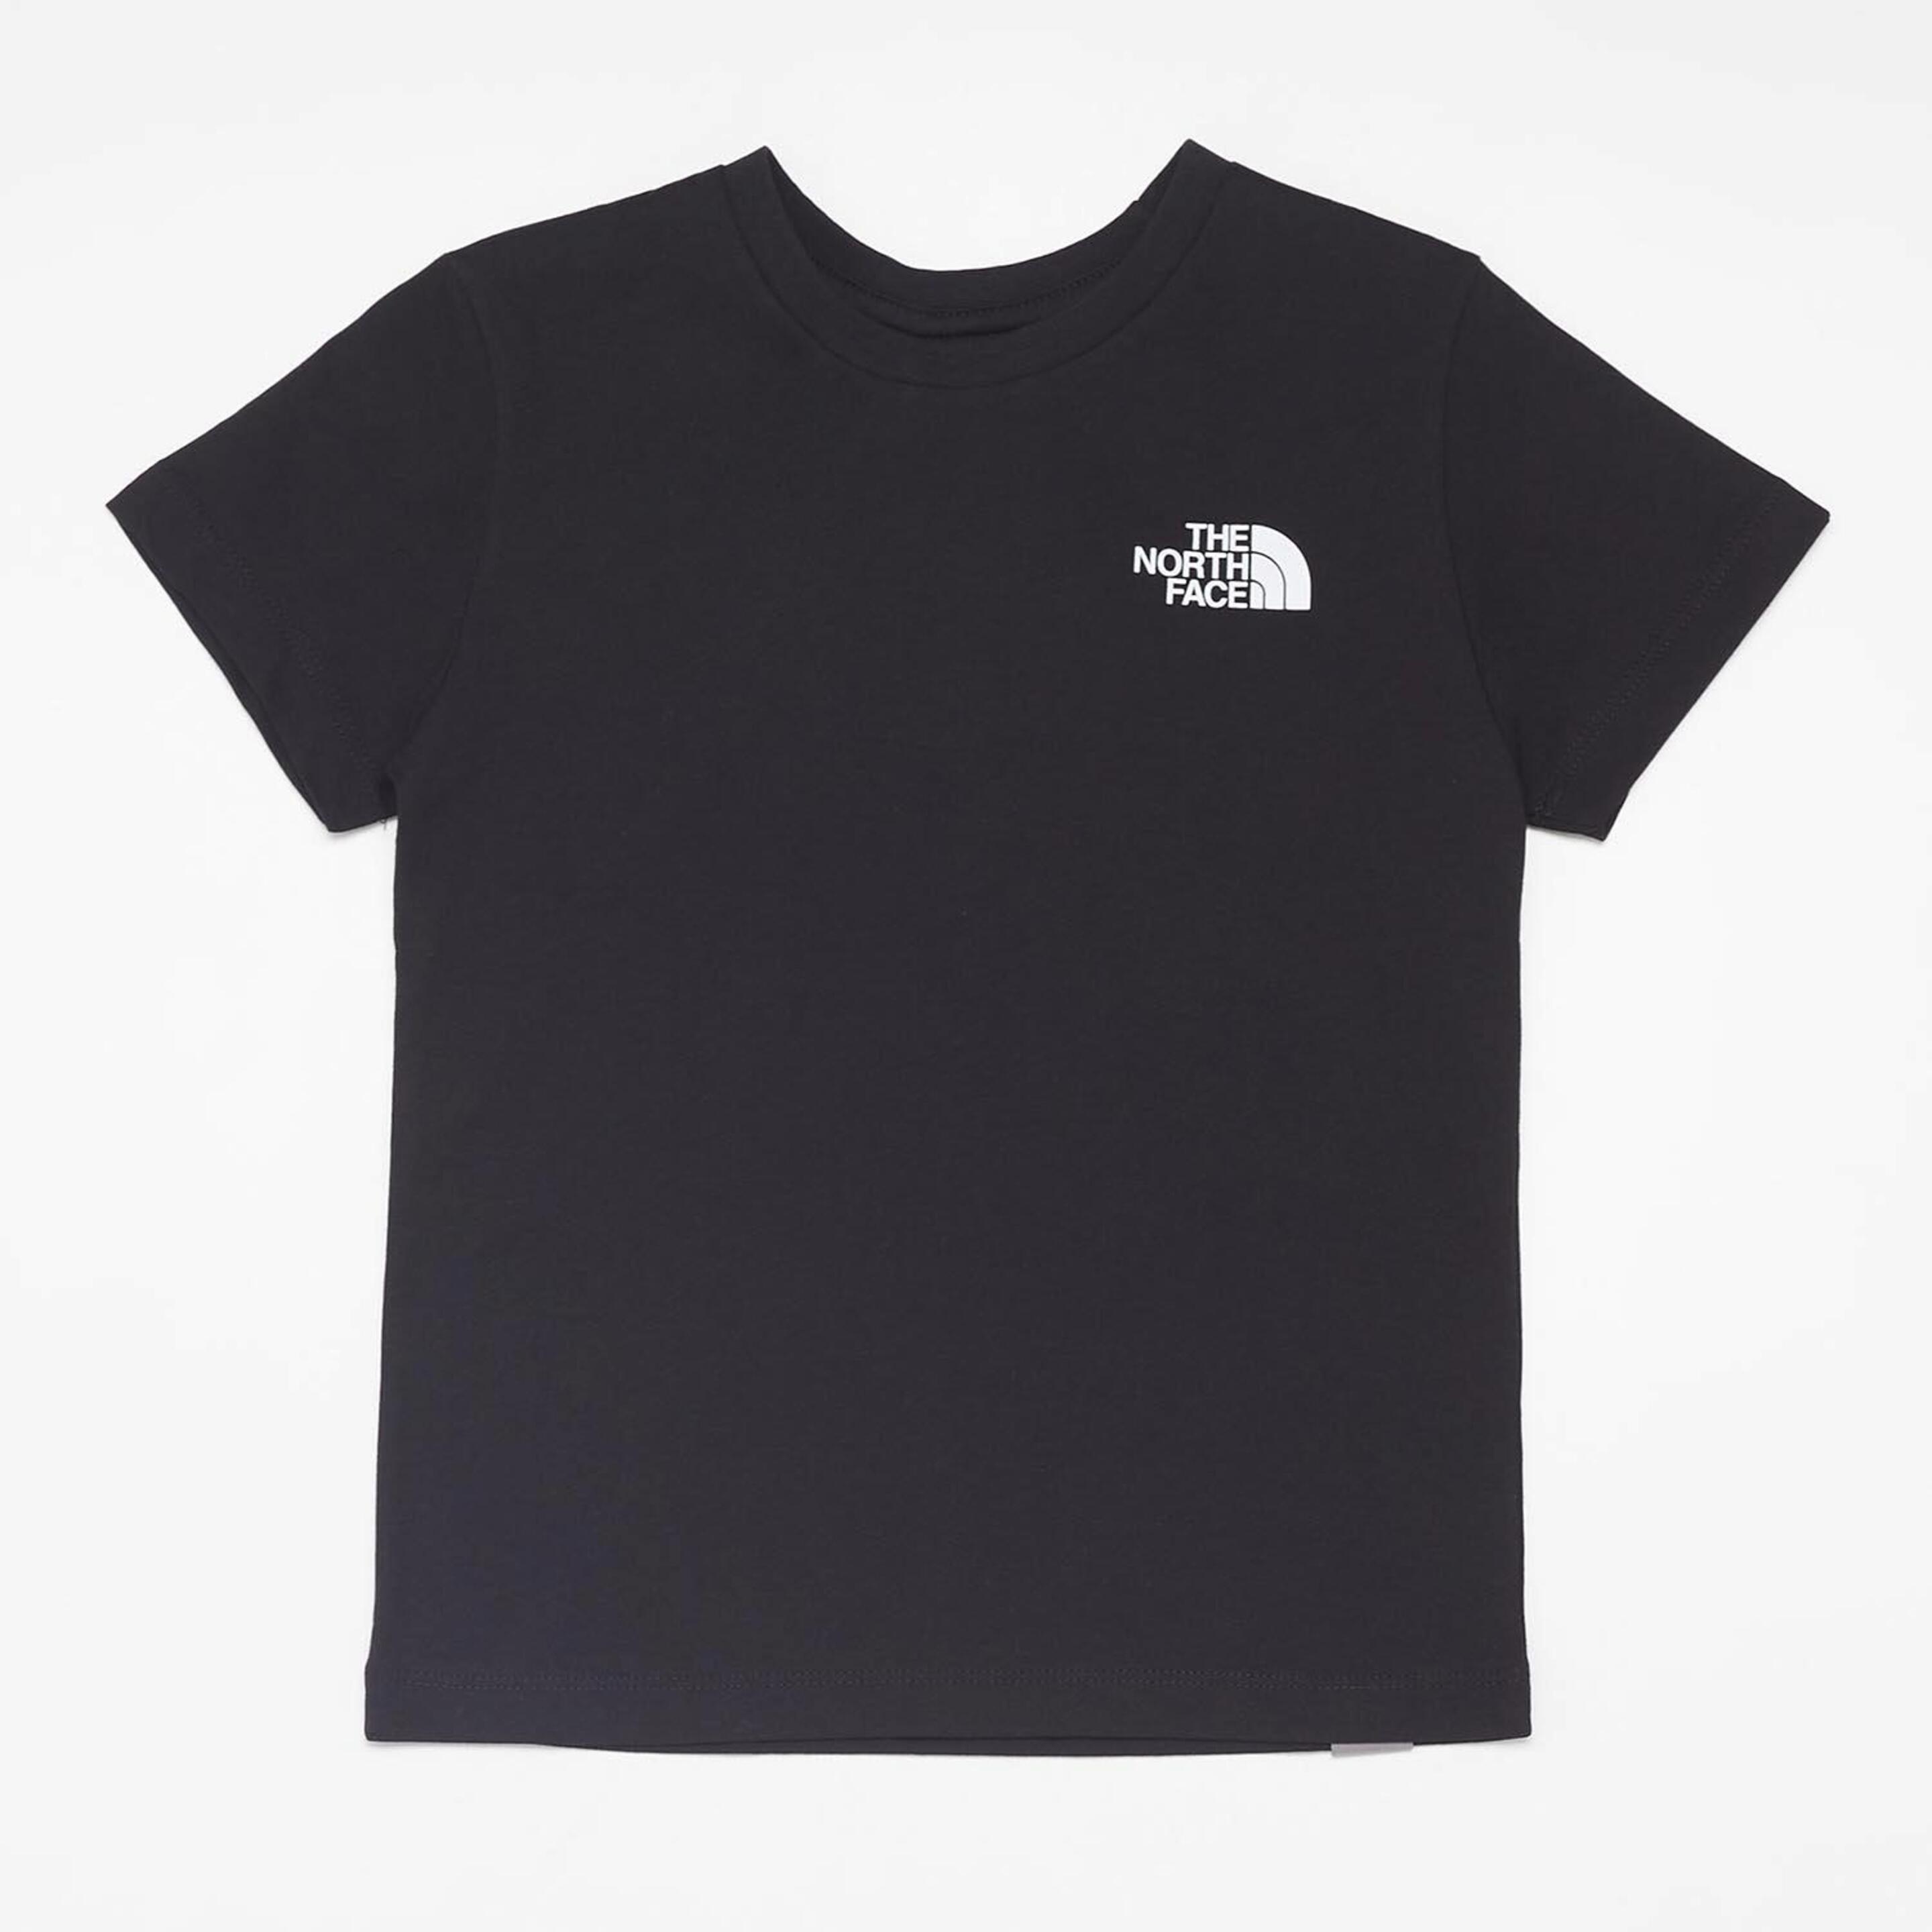 The North Face Simple - negro - Camiseta Niño